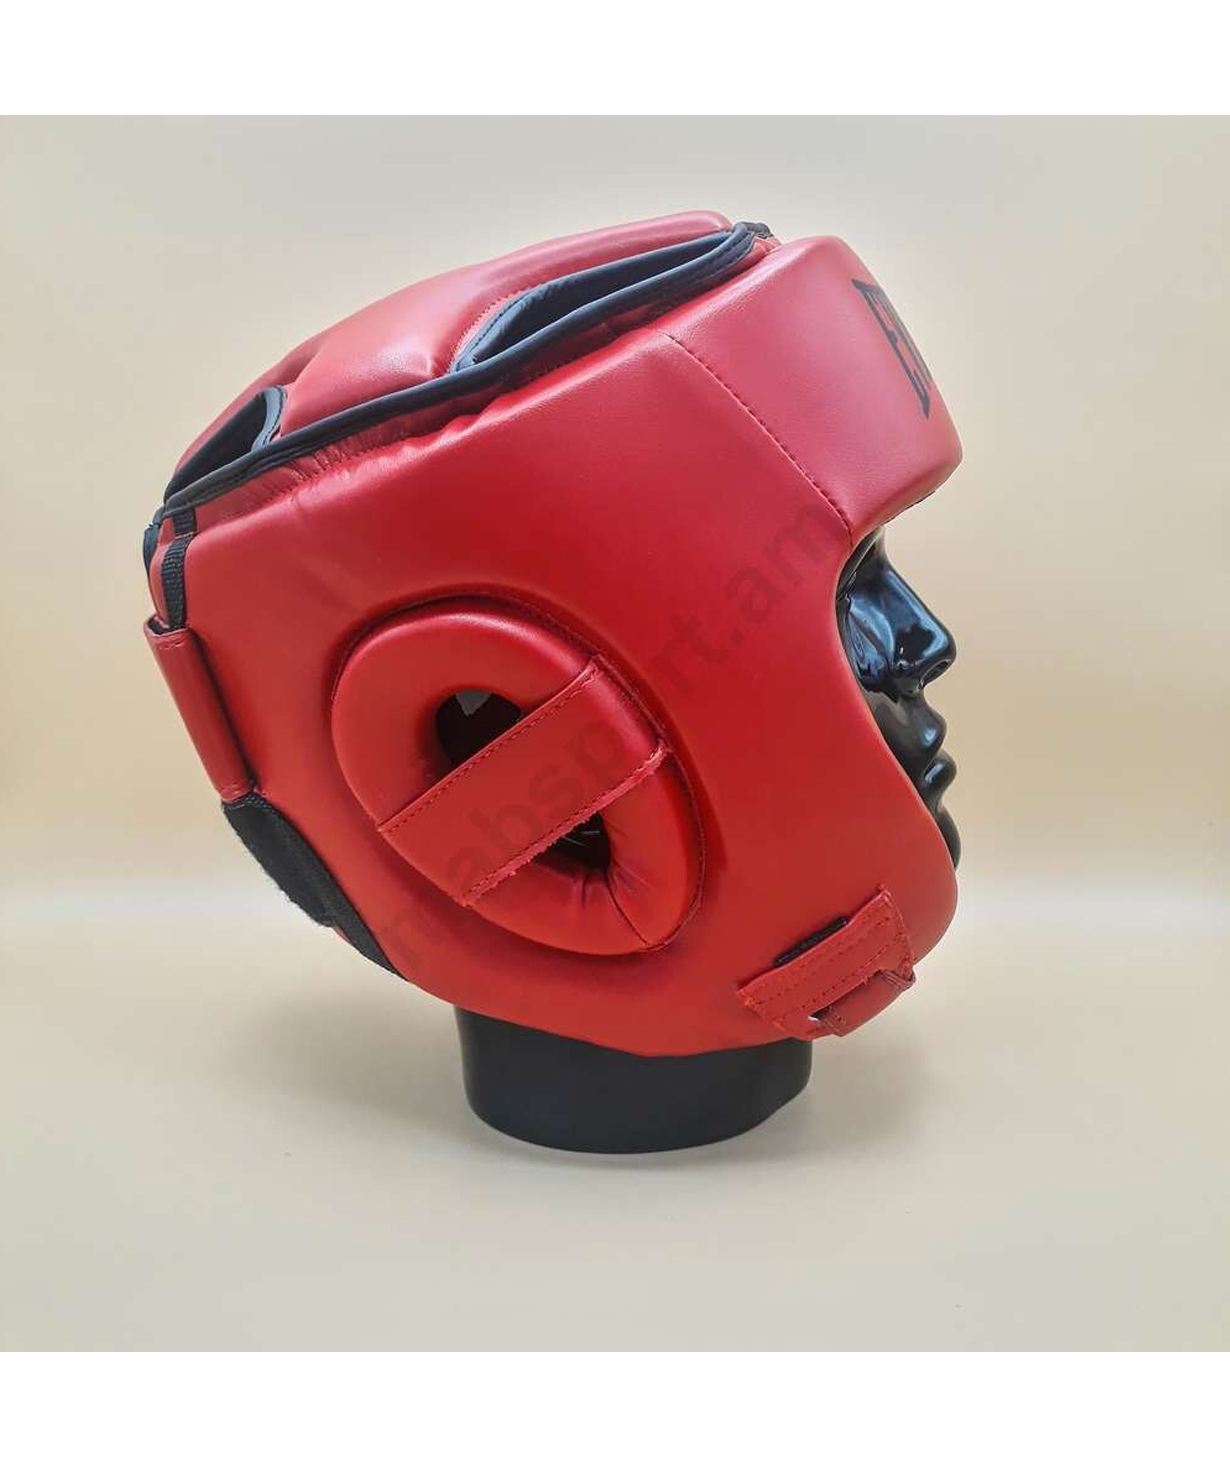 Kickboxing helmet«Everlast» red, S-M, L-XL